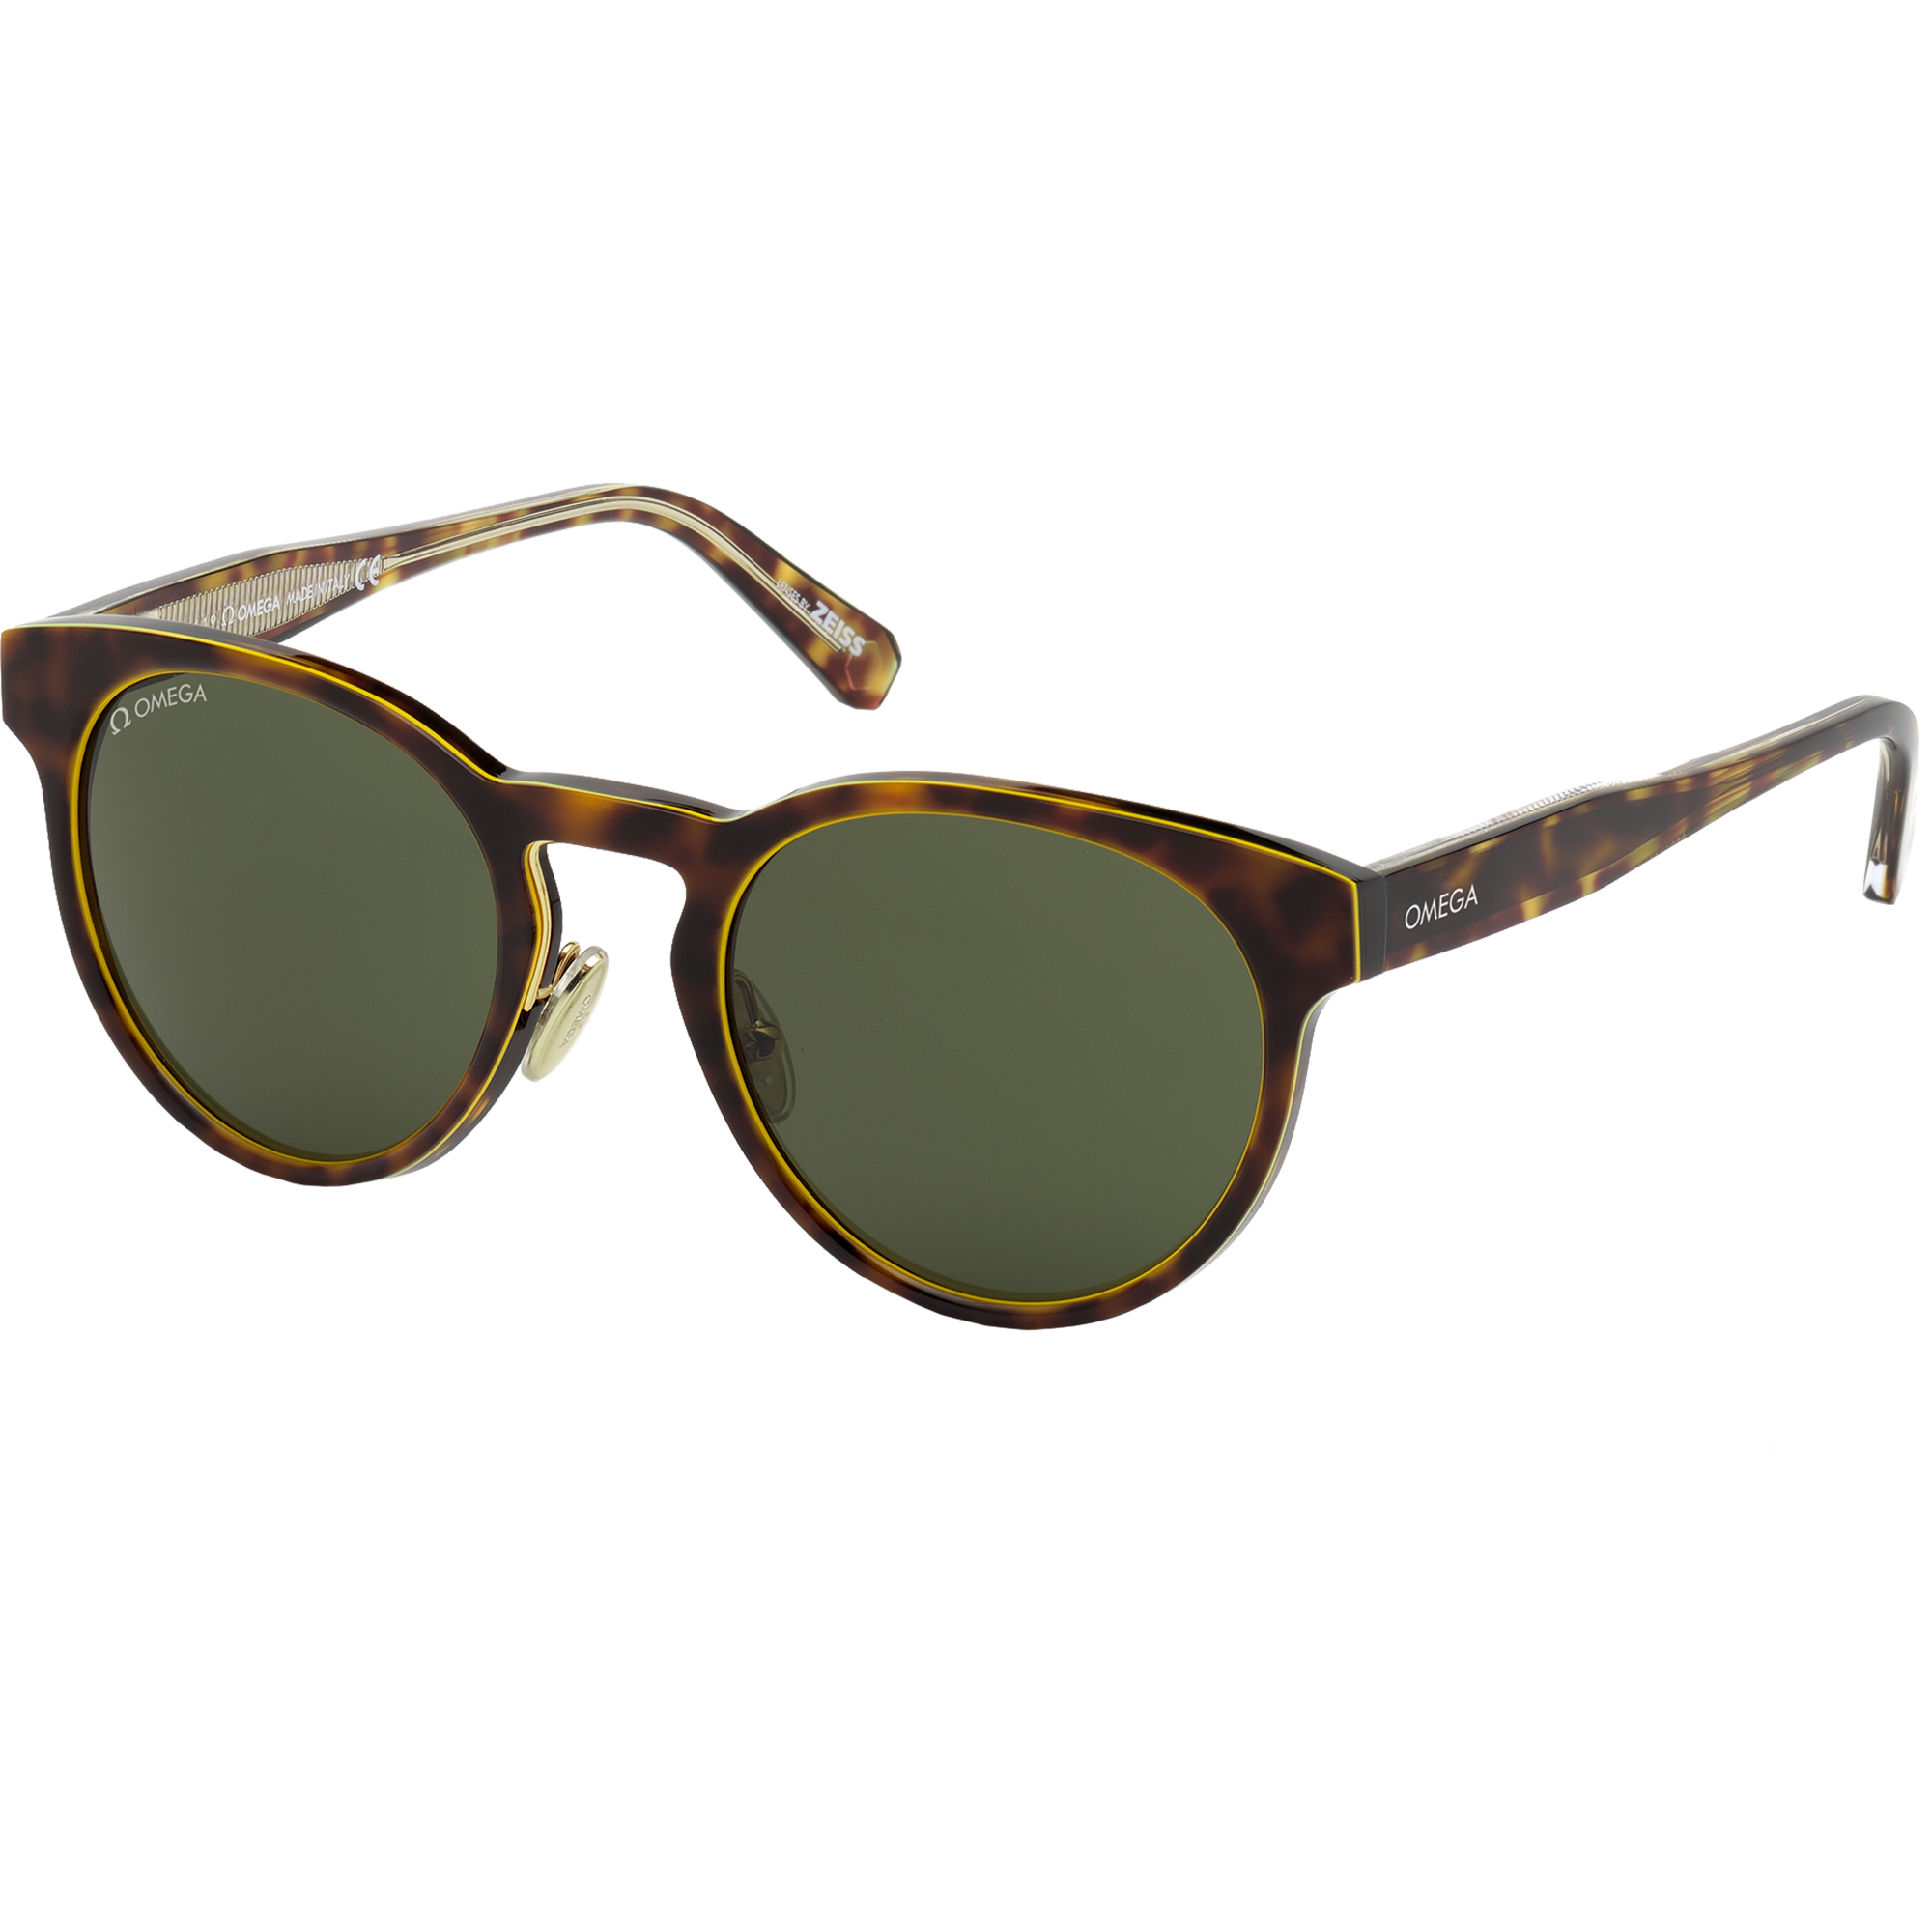 Солнцезащитные очки - Круглая форма, ОЧКИ ДЛЯ МУЖЧИН И ЖЕНЩИН - OM0020-H5252N